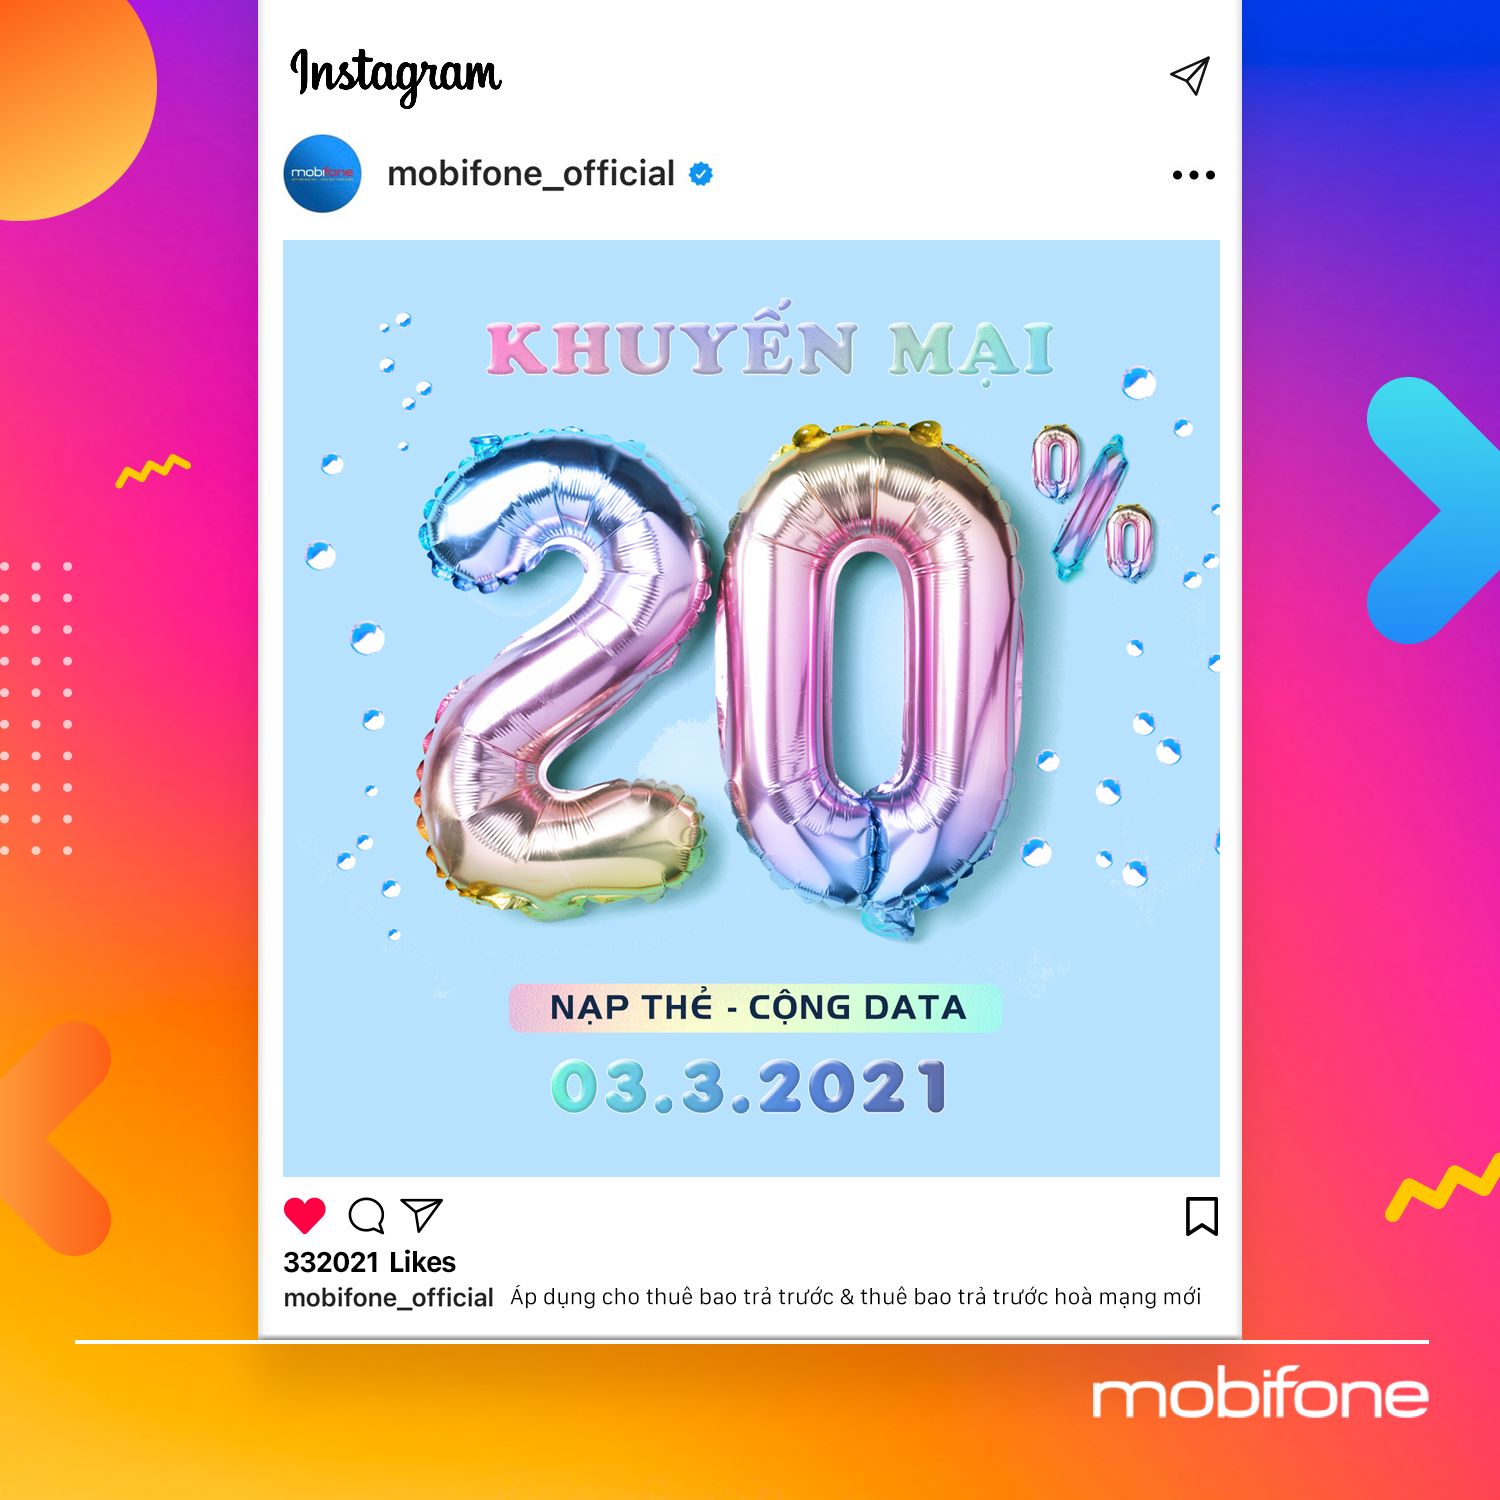 Mobifone khuyến mãi 3/3/2021 tặng 20% data giá trị thẻ nạp